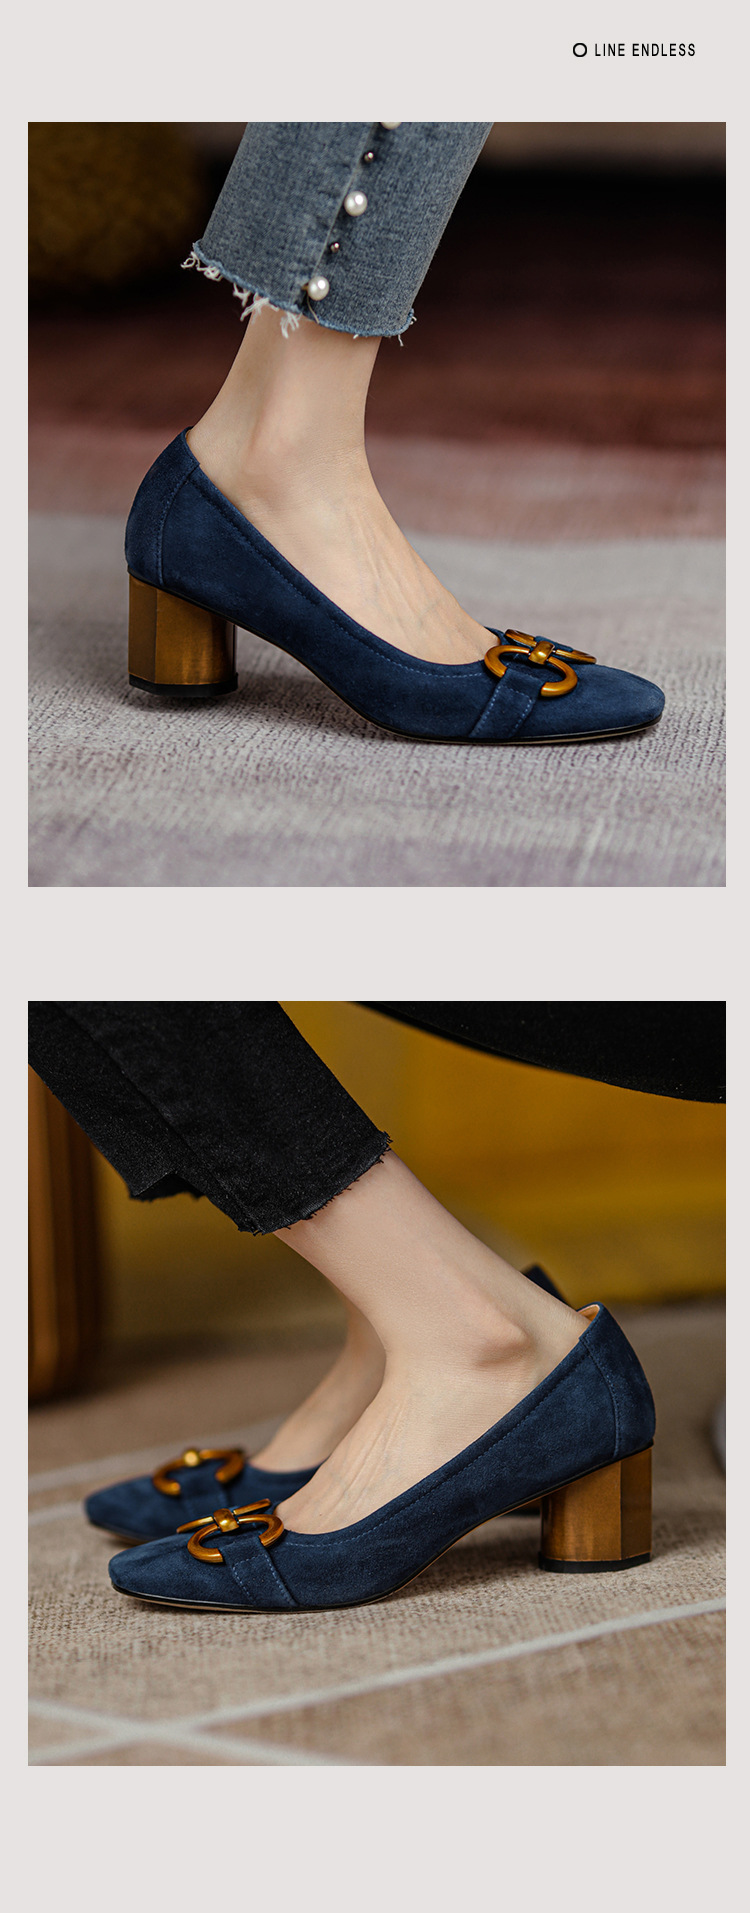 Thiết kế da PU lộn mềm mại, đi êm chân, gắn khoá Pixie 3 Màu Siêu Đẹp Fom Chuẩn Việt Lên Chân Cực Sang. Thiết kế Mũi Vuông Gắn Khoá là mẫu giày vintage pha trộn với sự sang trọng